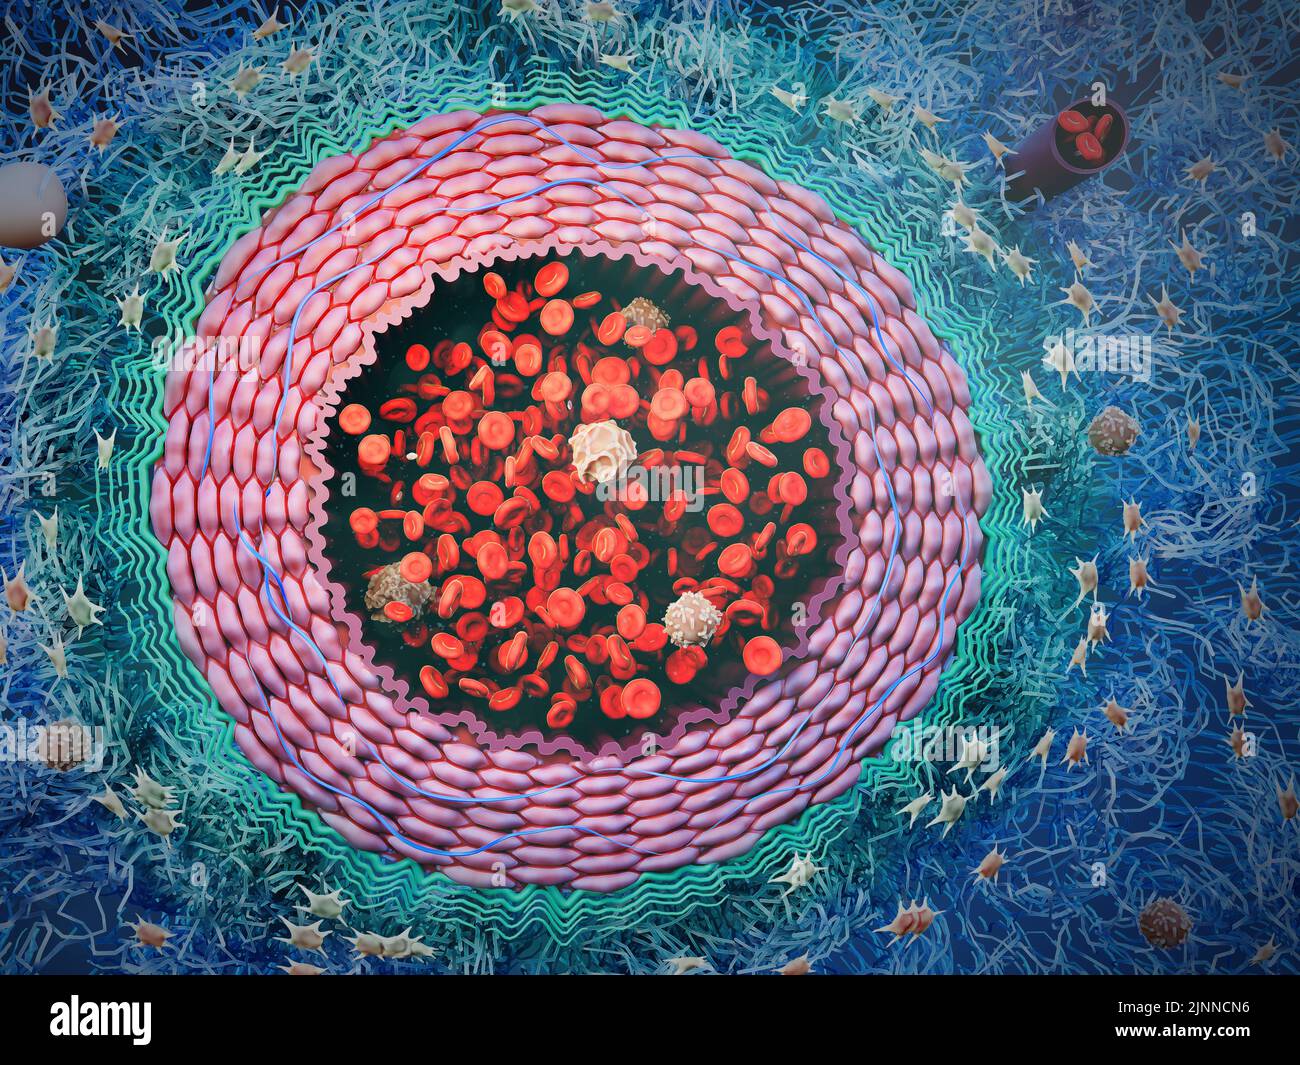 Artère avec cellules sanguines, illustration Banque D'Images